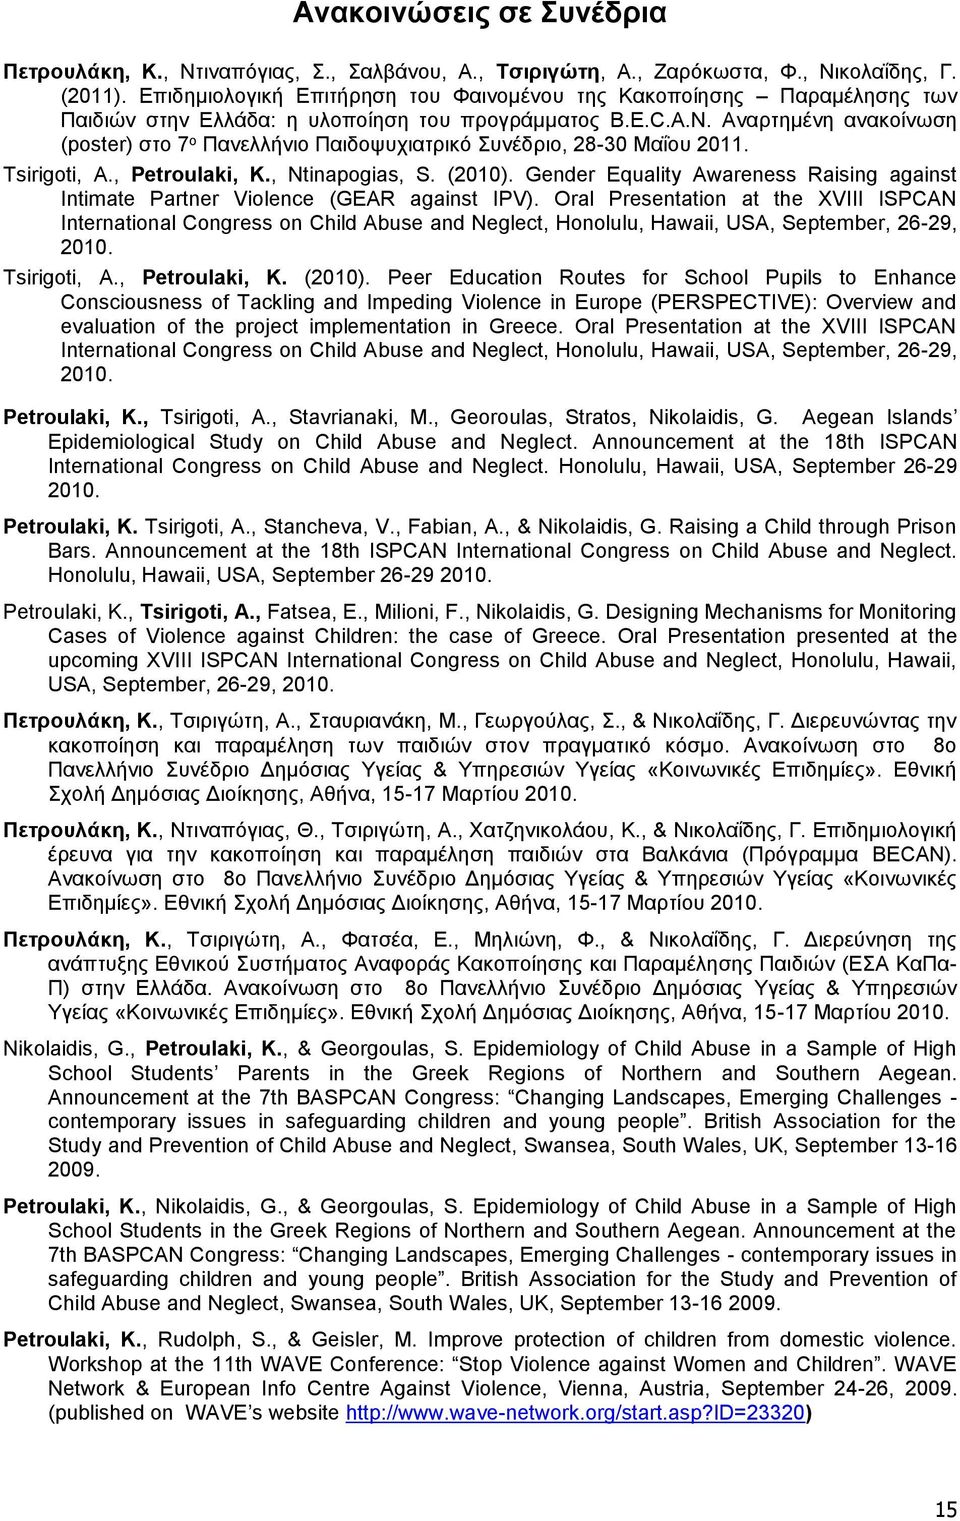 Αναρτημένη ανακοίνωση (poster) στο 7 ο Πανελλήνιο Παιδοψυχιατρικό Συνέδριο, 28-30 Μαΐου 2011. Tsirigoti, A., Petroulaki, K., Ntinapogias, S. (2010).